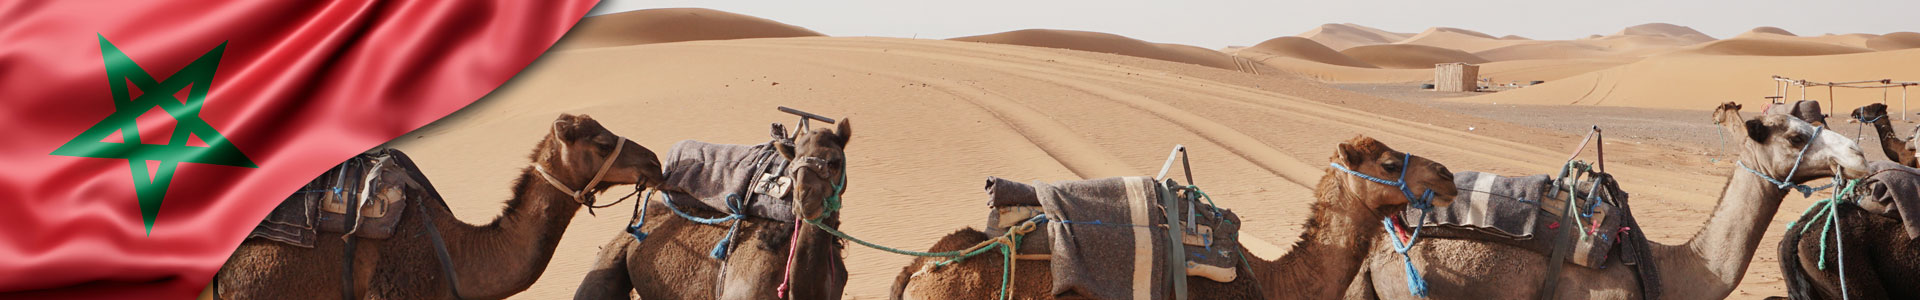 Bandera de Marruecos con foto de camellos dando un paseo en el desierto de Marruecos